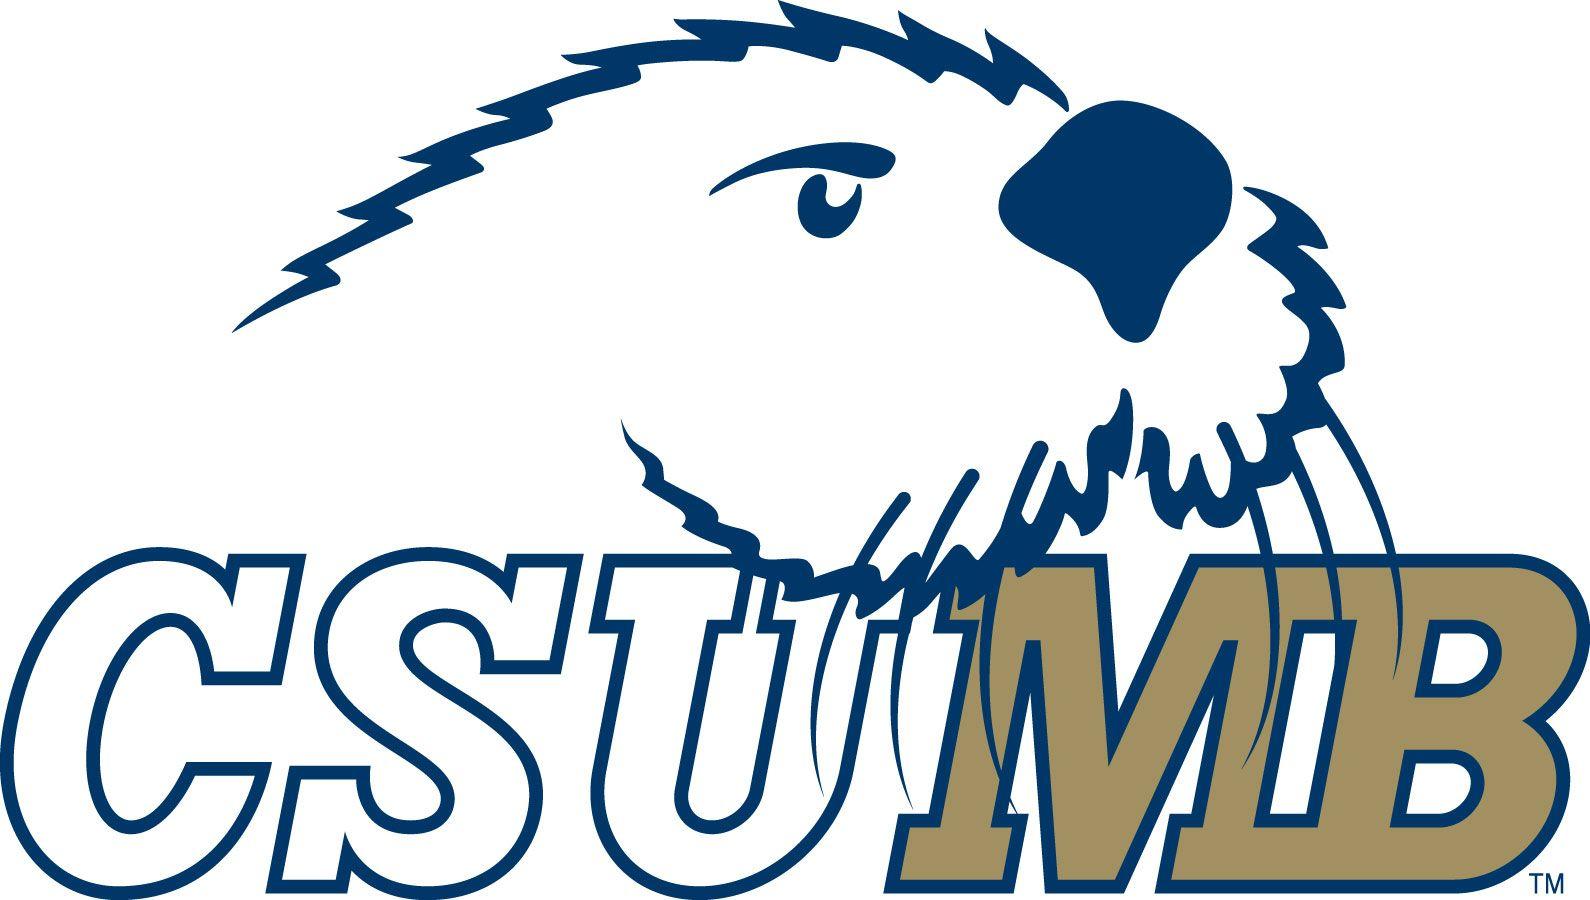 CSUMB Logo - Higher Education. Tab 2 Contact. Forrest CSUMB logo - Salinas ...